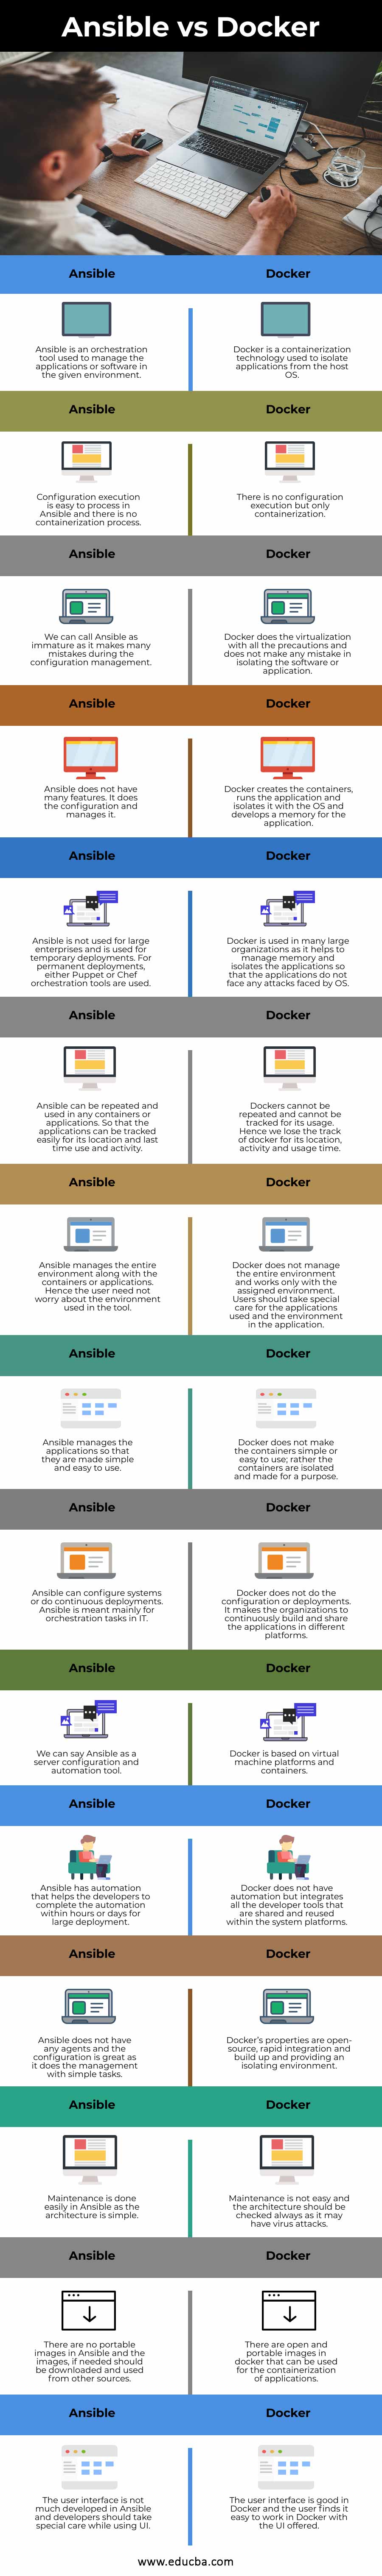 Ansible-vs-Docker-info